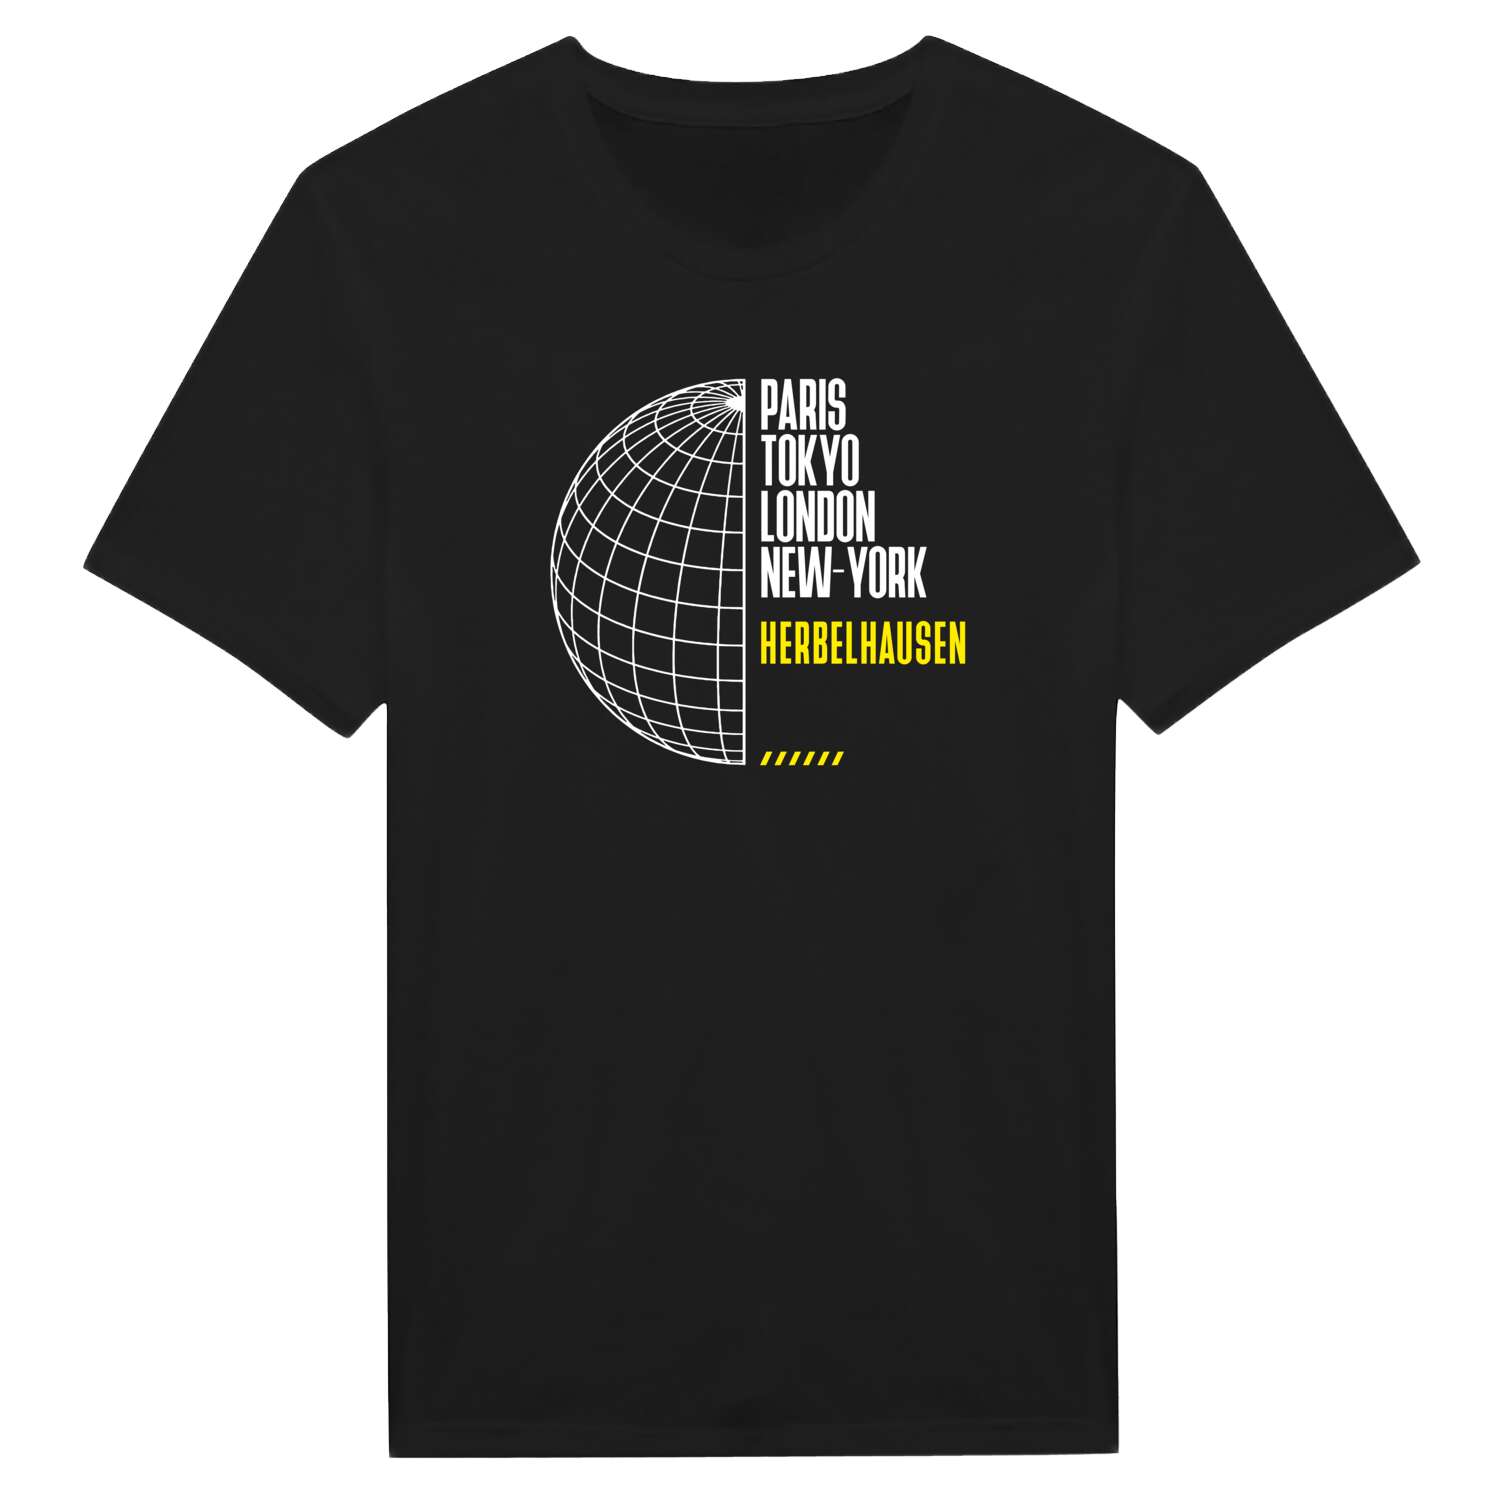 Herbelhausen T-Shirt »Paris Tokyo London«